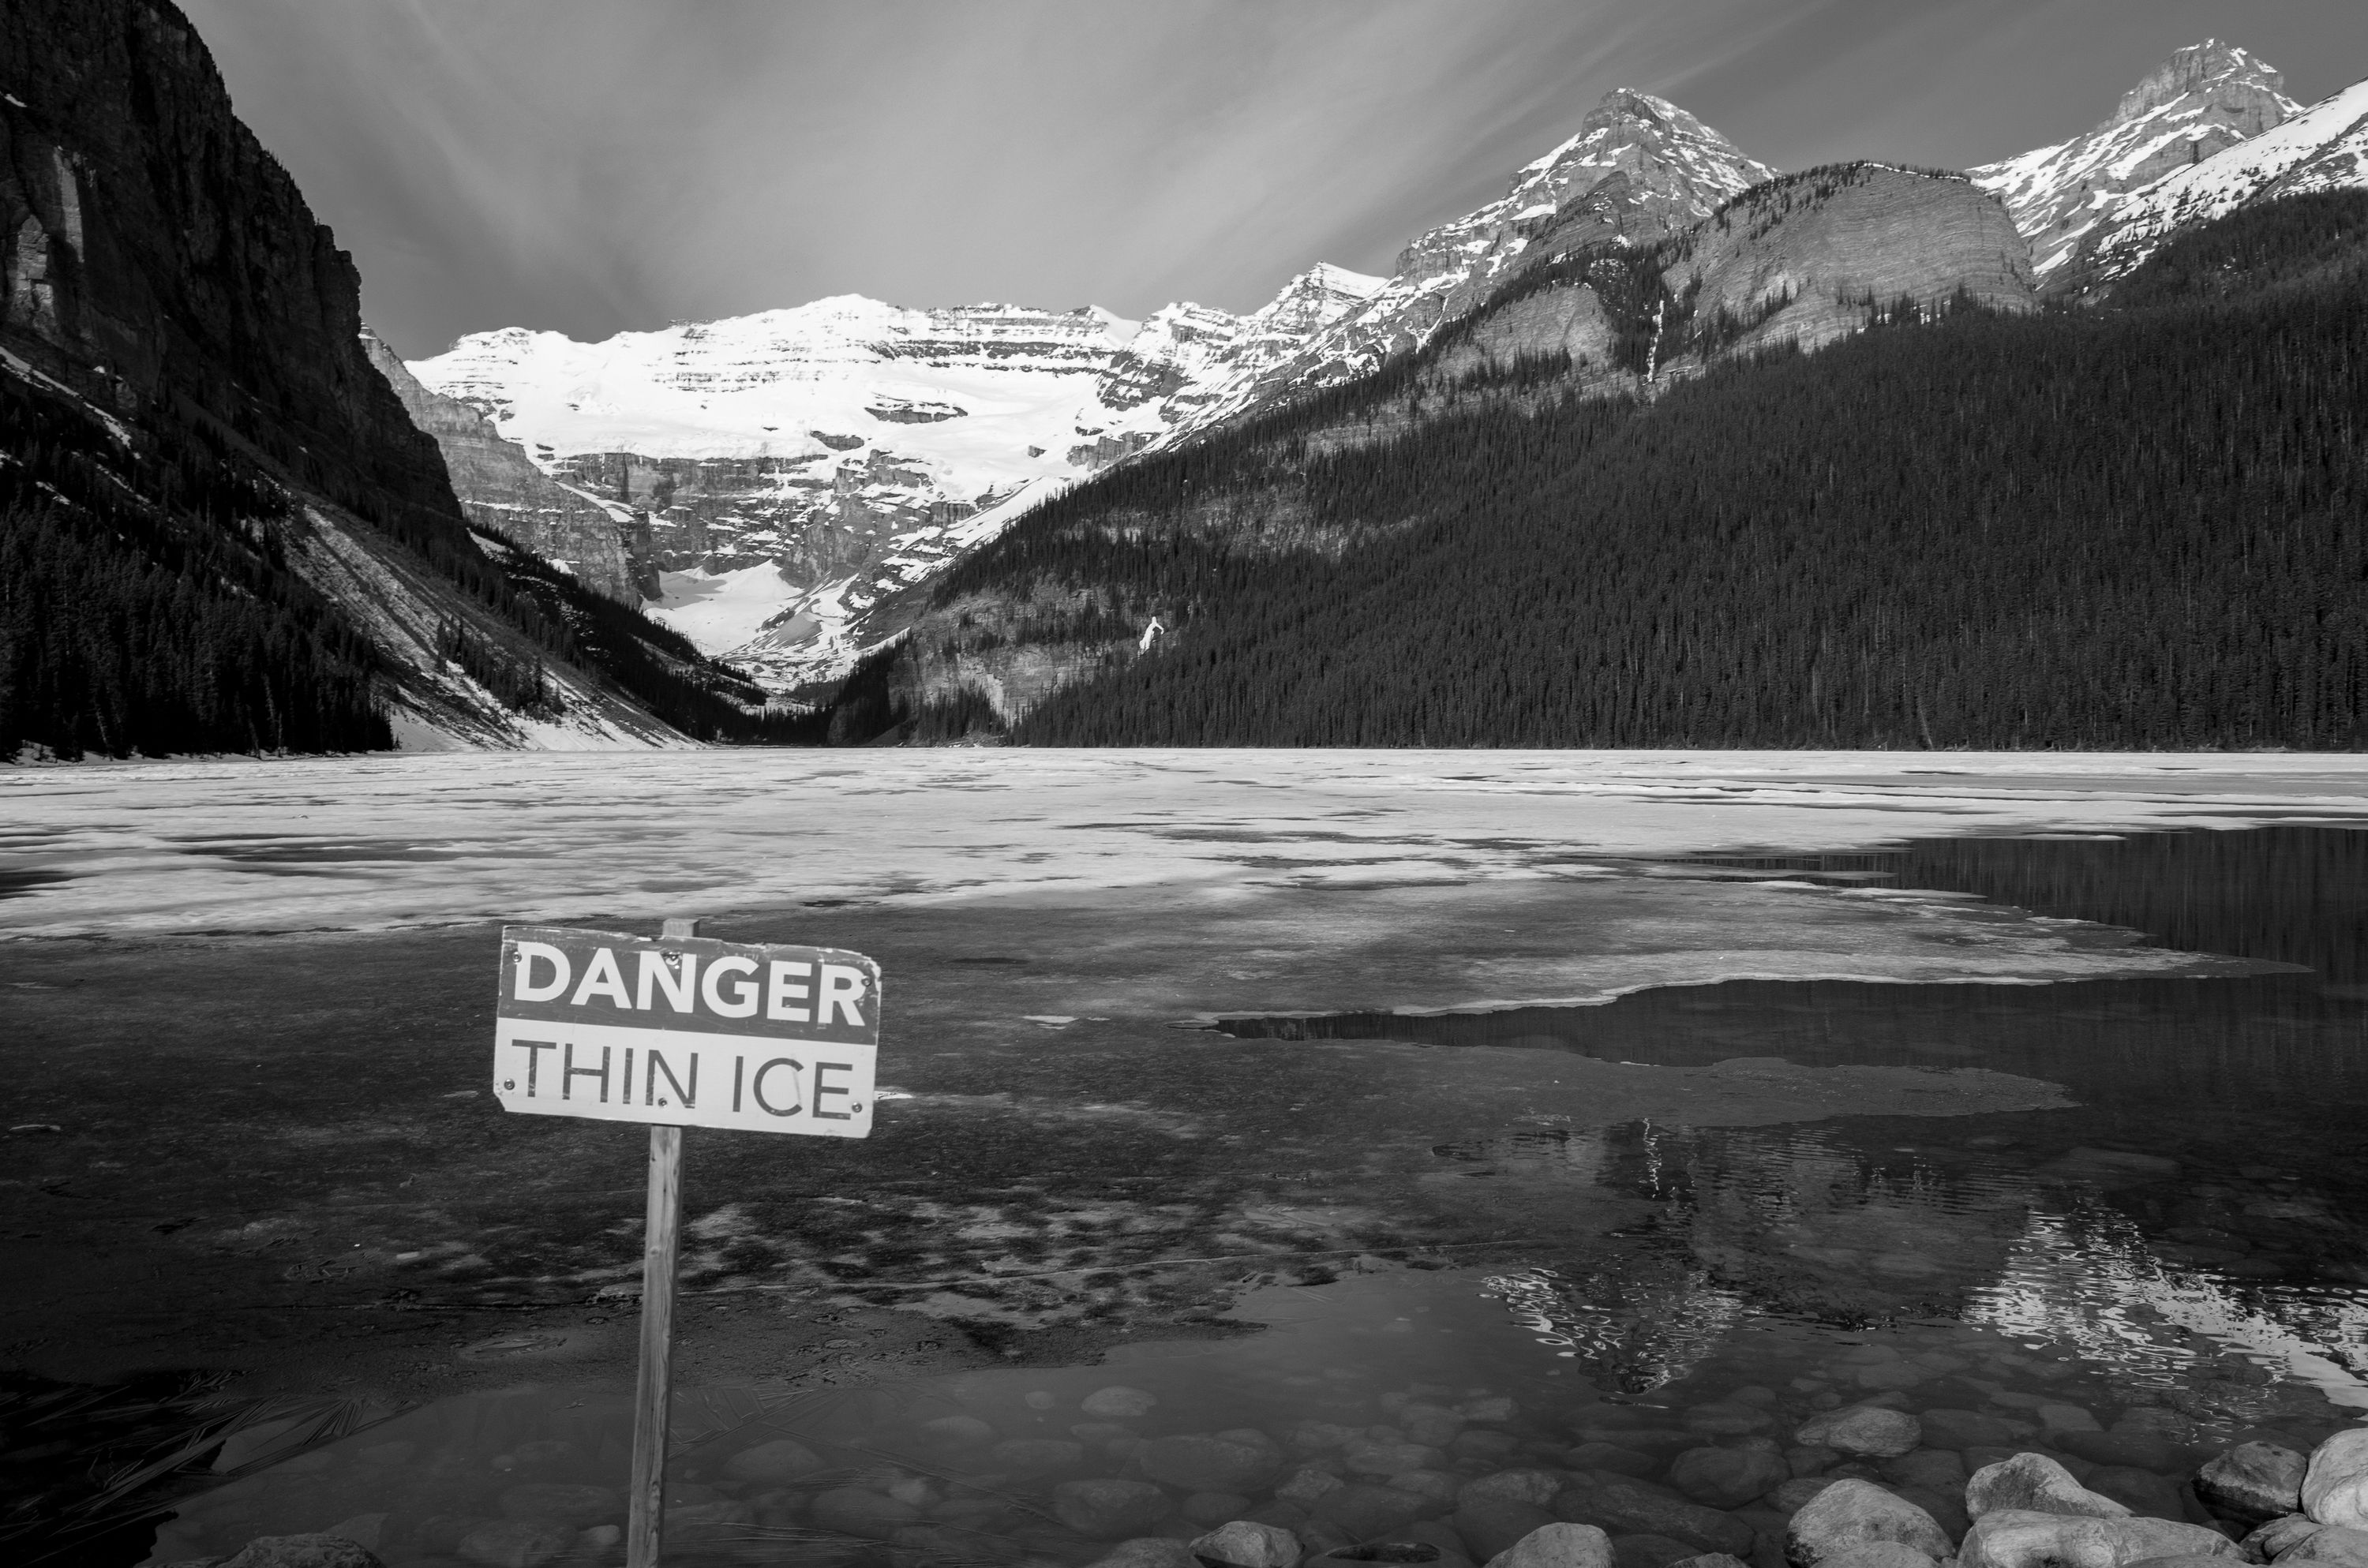 Danger - Thin Ice. Lake Louise